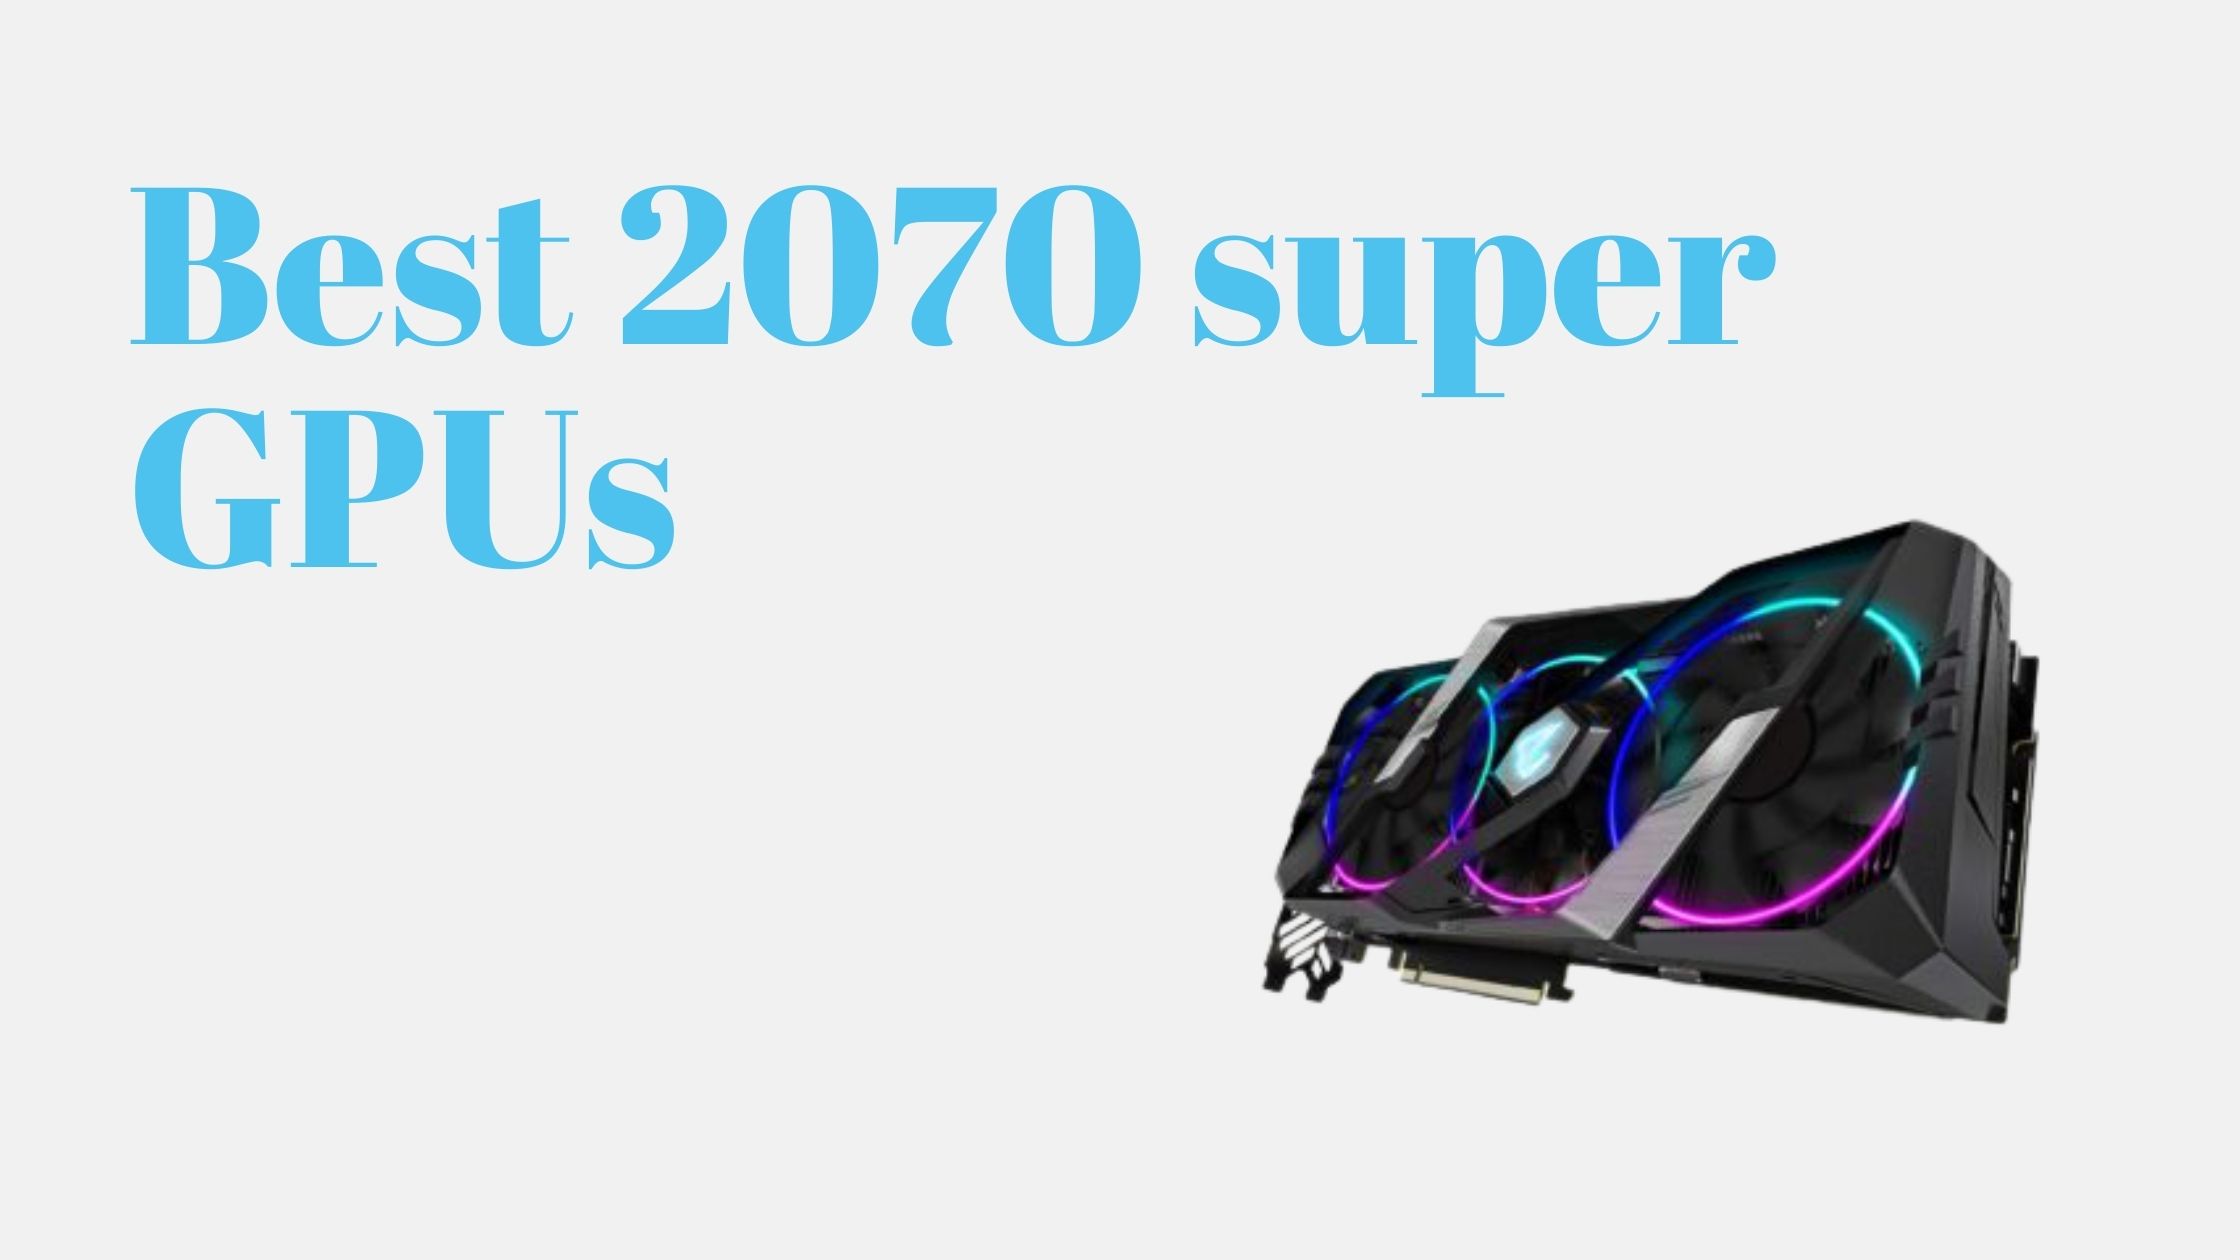 10 Best 2070 super GPUs